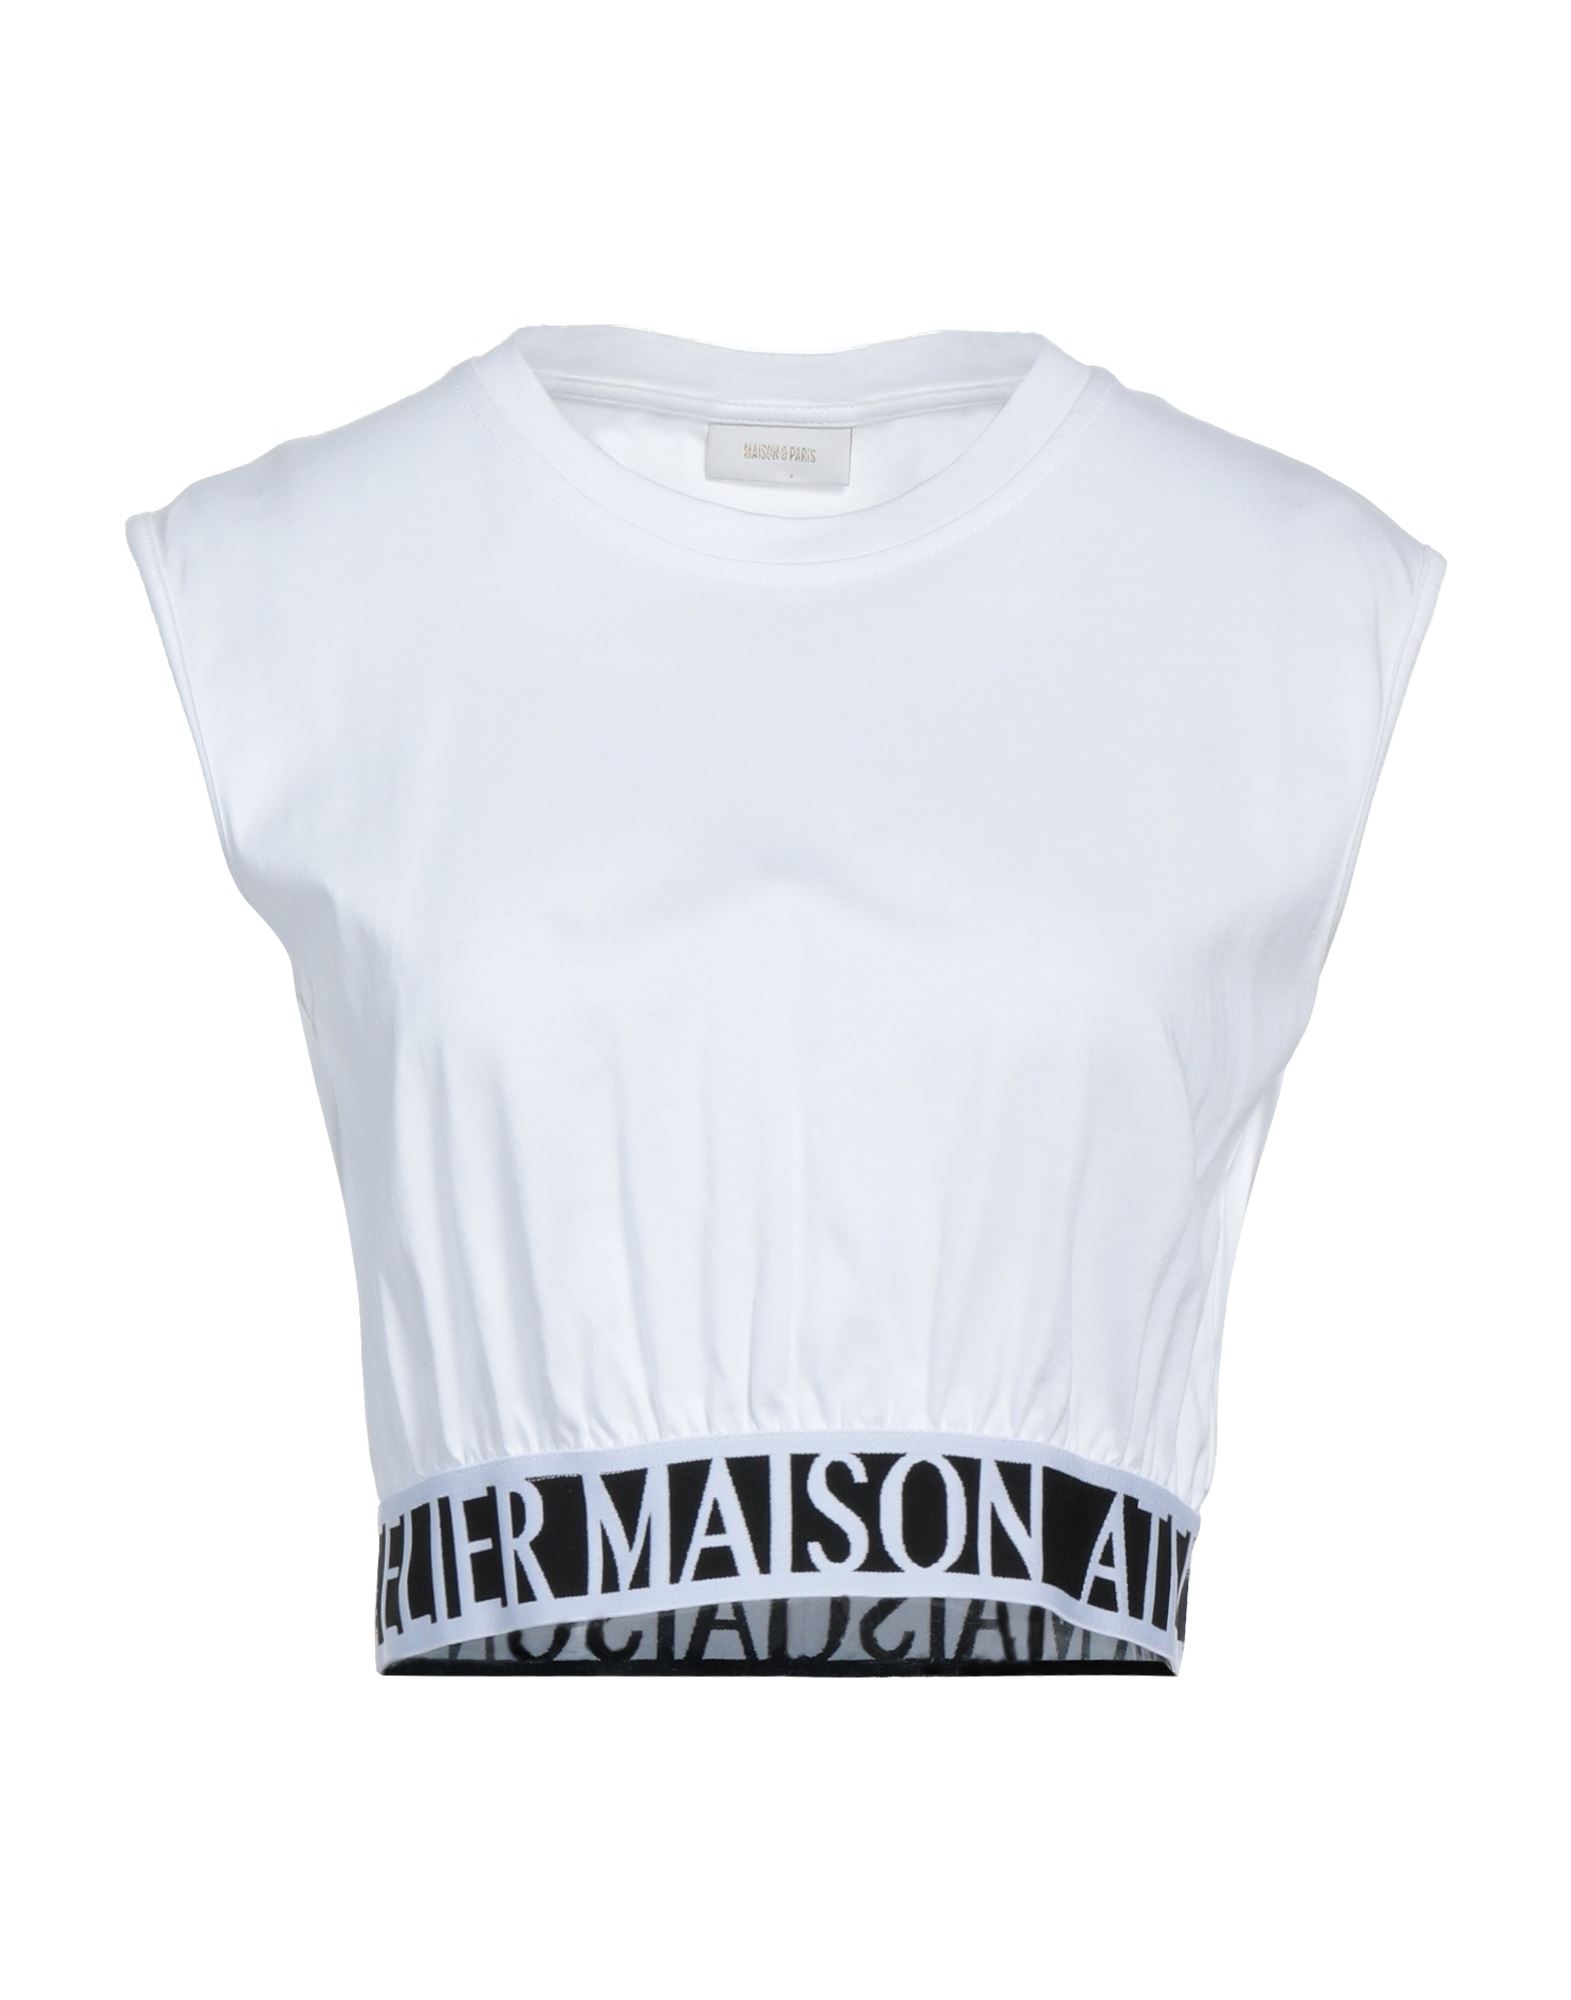 MAISON 9 Paris T-shirts